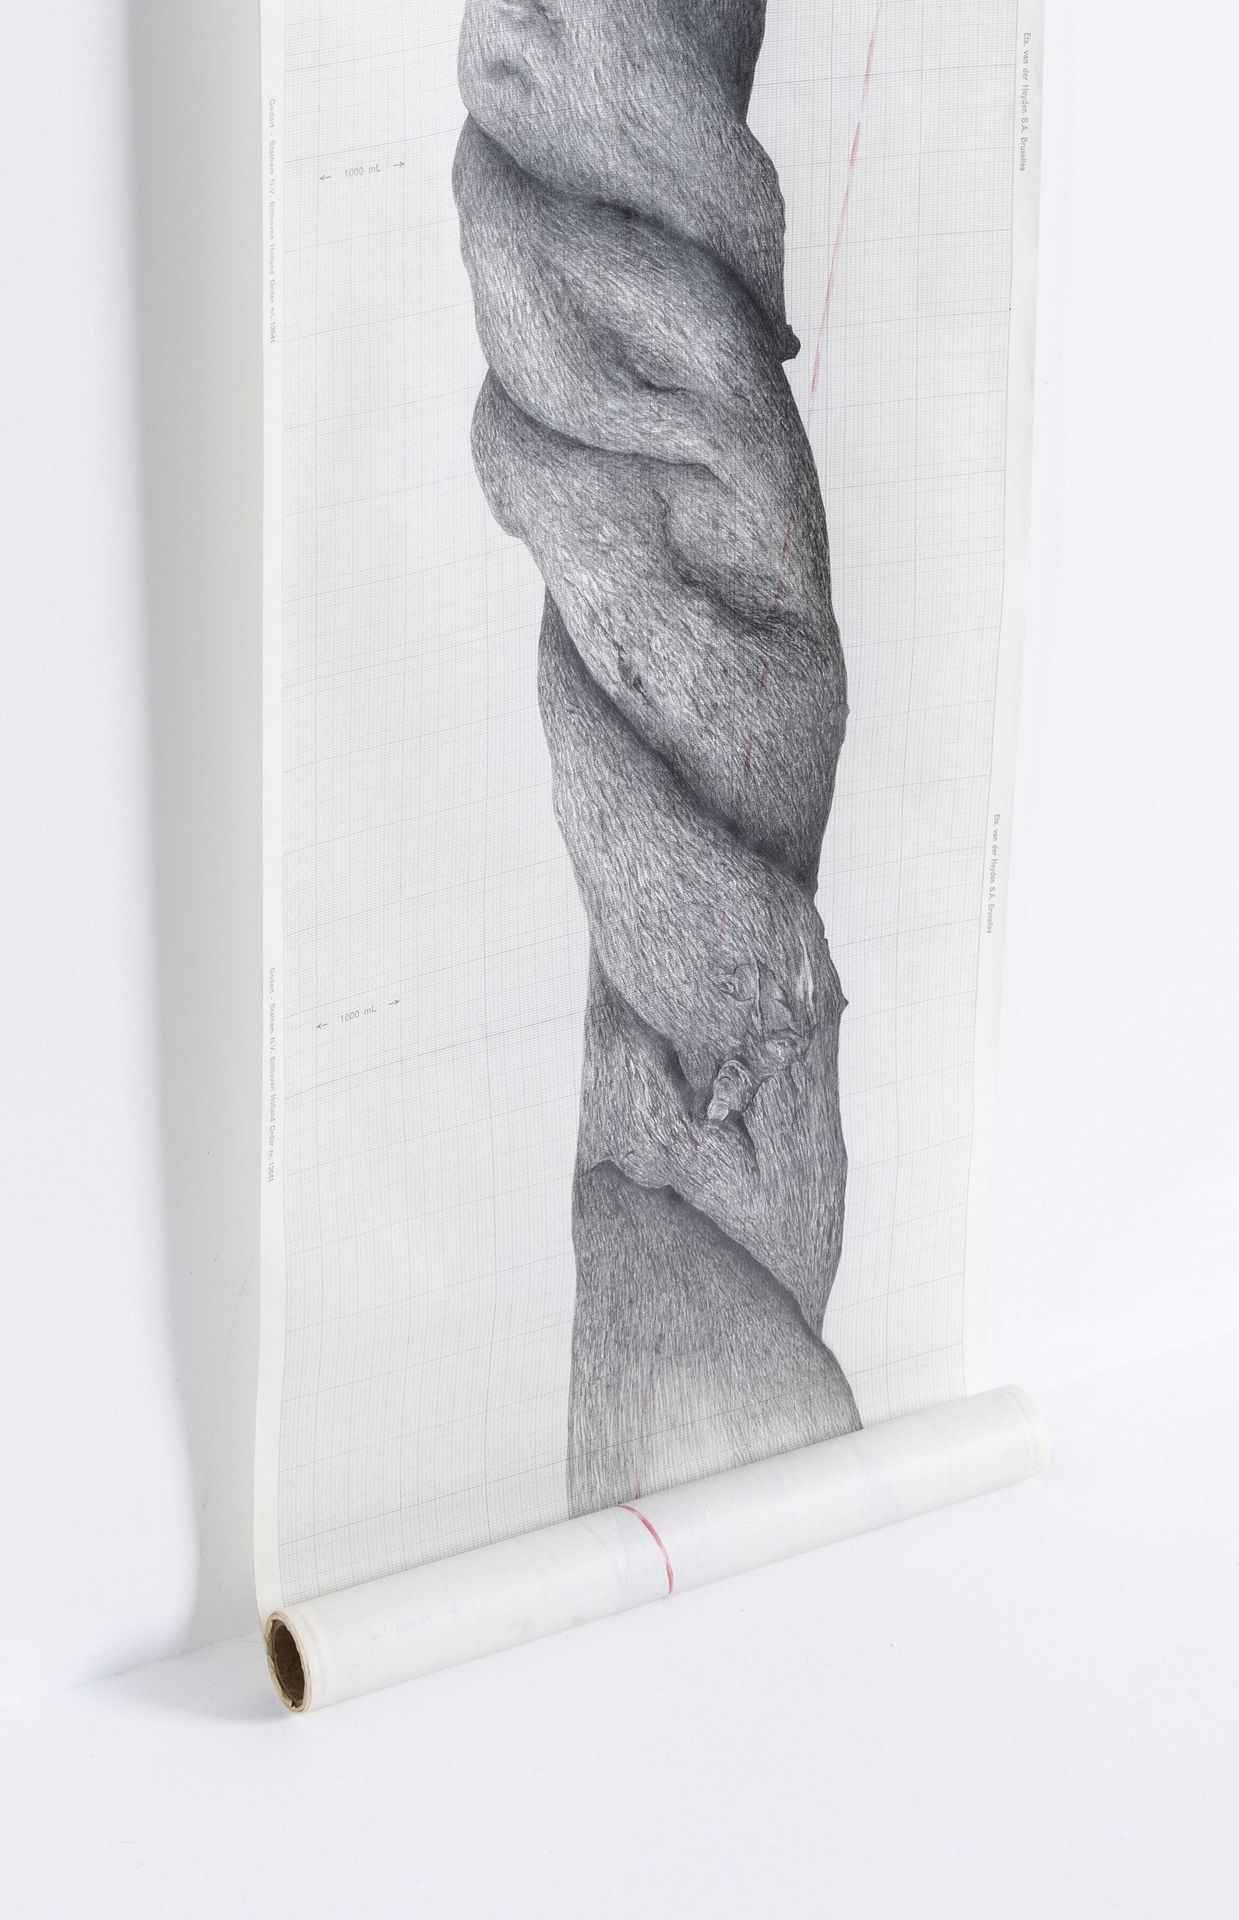 Amélie Scotta, Carbone II, dessin au graphite sur papier millimétré, 250 x 30 cm, 2021
